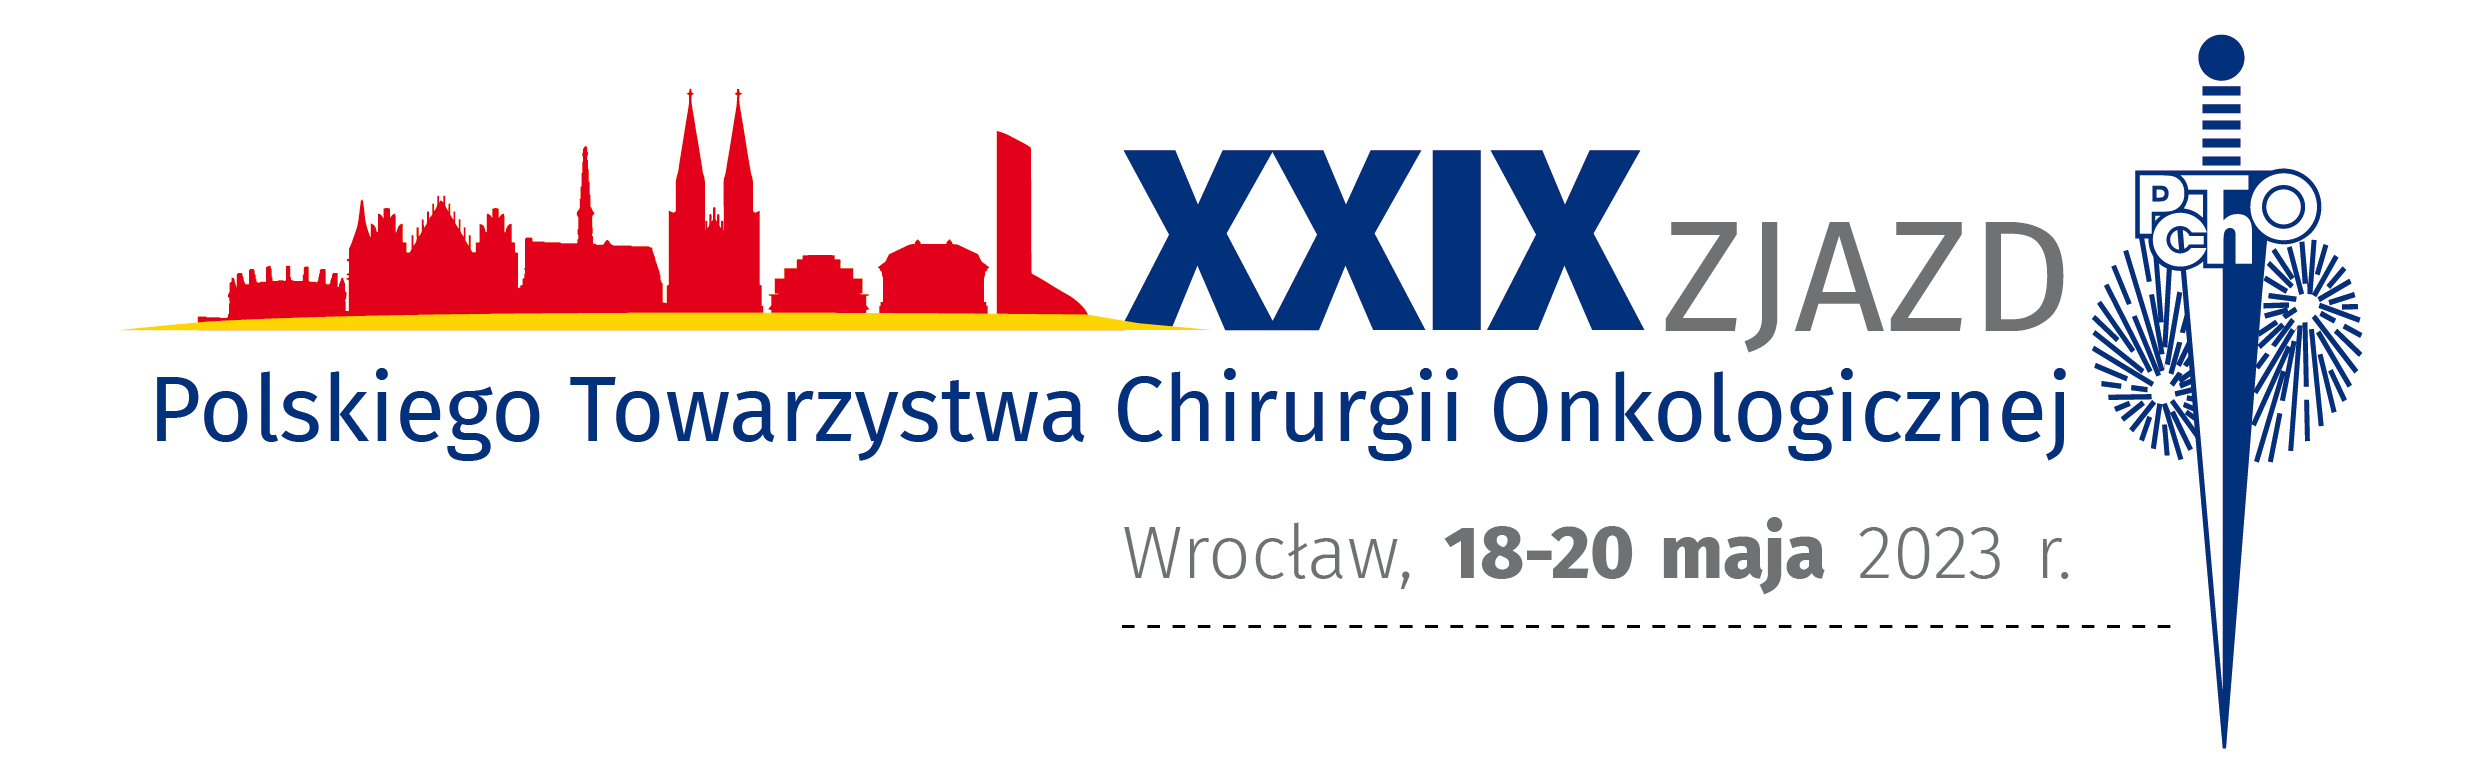 29 Zjazd PtChO2023 Wroclaw winieta